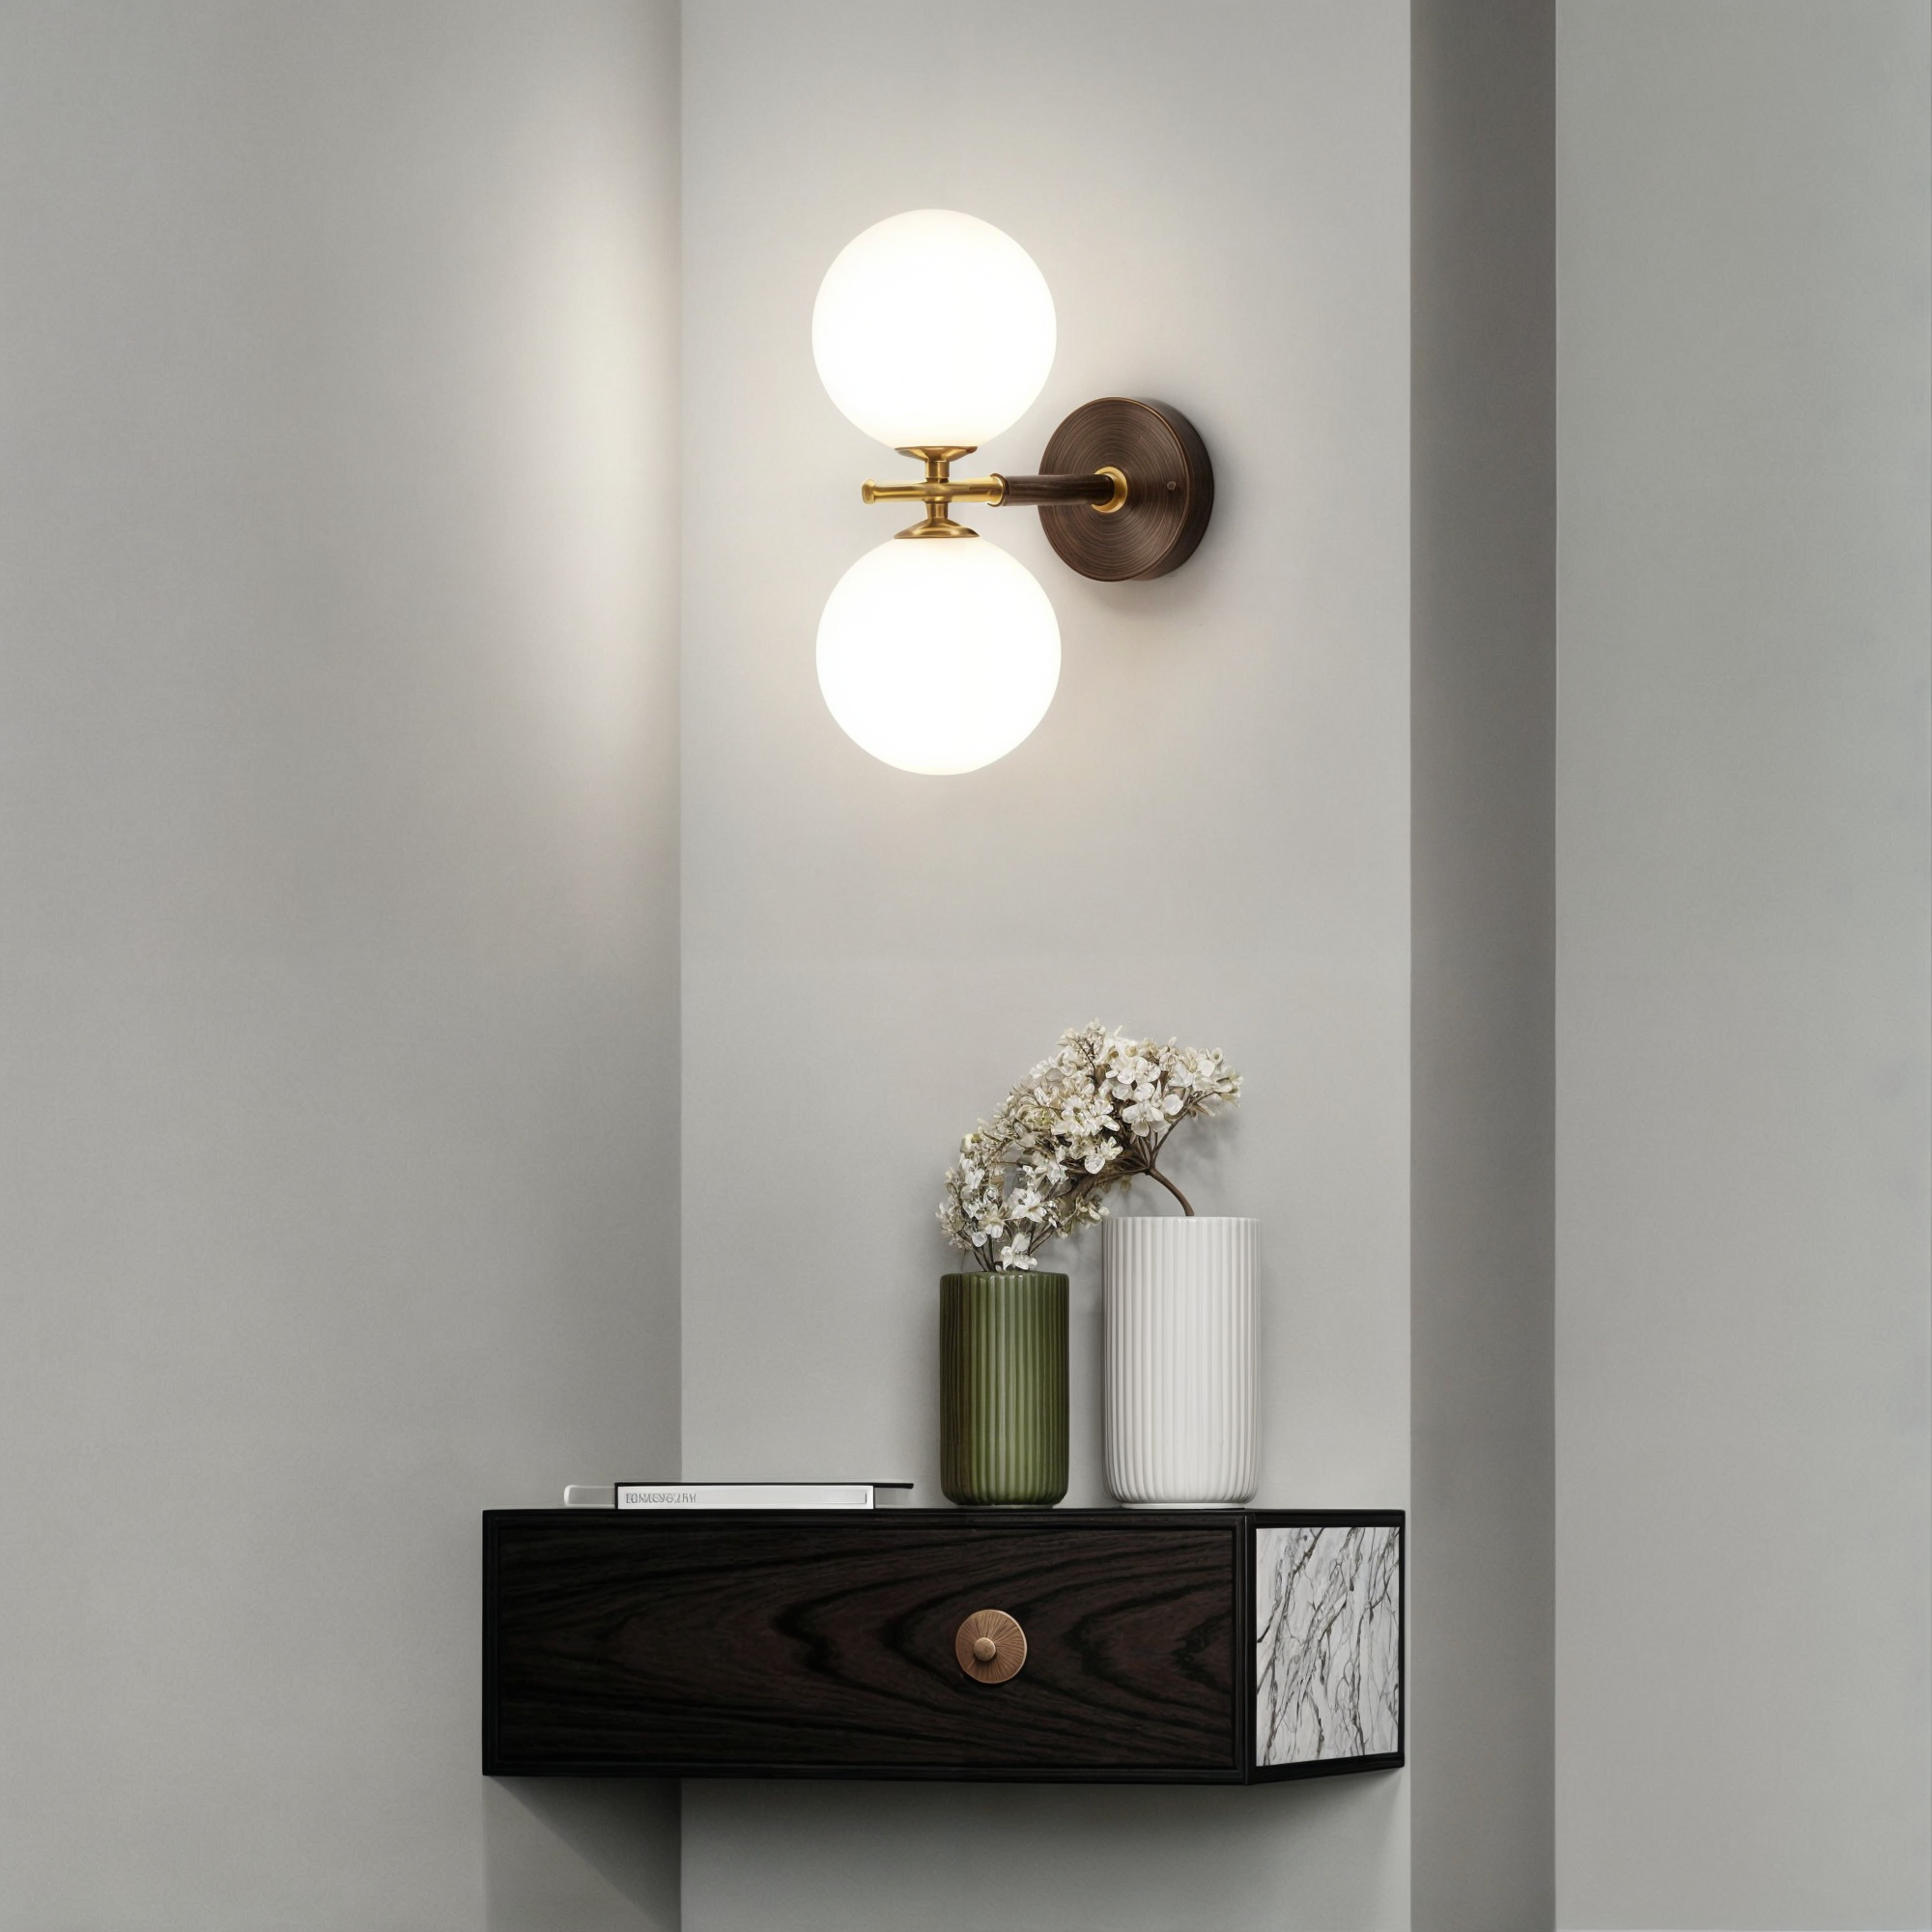 Moderne Kupferkugel-Wandleuchte, G9 LED-Lampen, warmes und kaltes weißes Licht, AC-Strom, RoHS-zertifiziert, für Wohnzimmer, Schlafzimmer, Arbeitszimmer